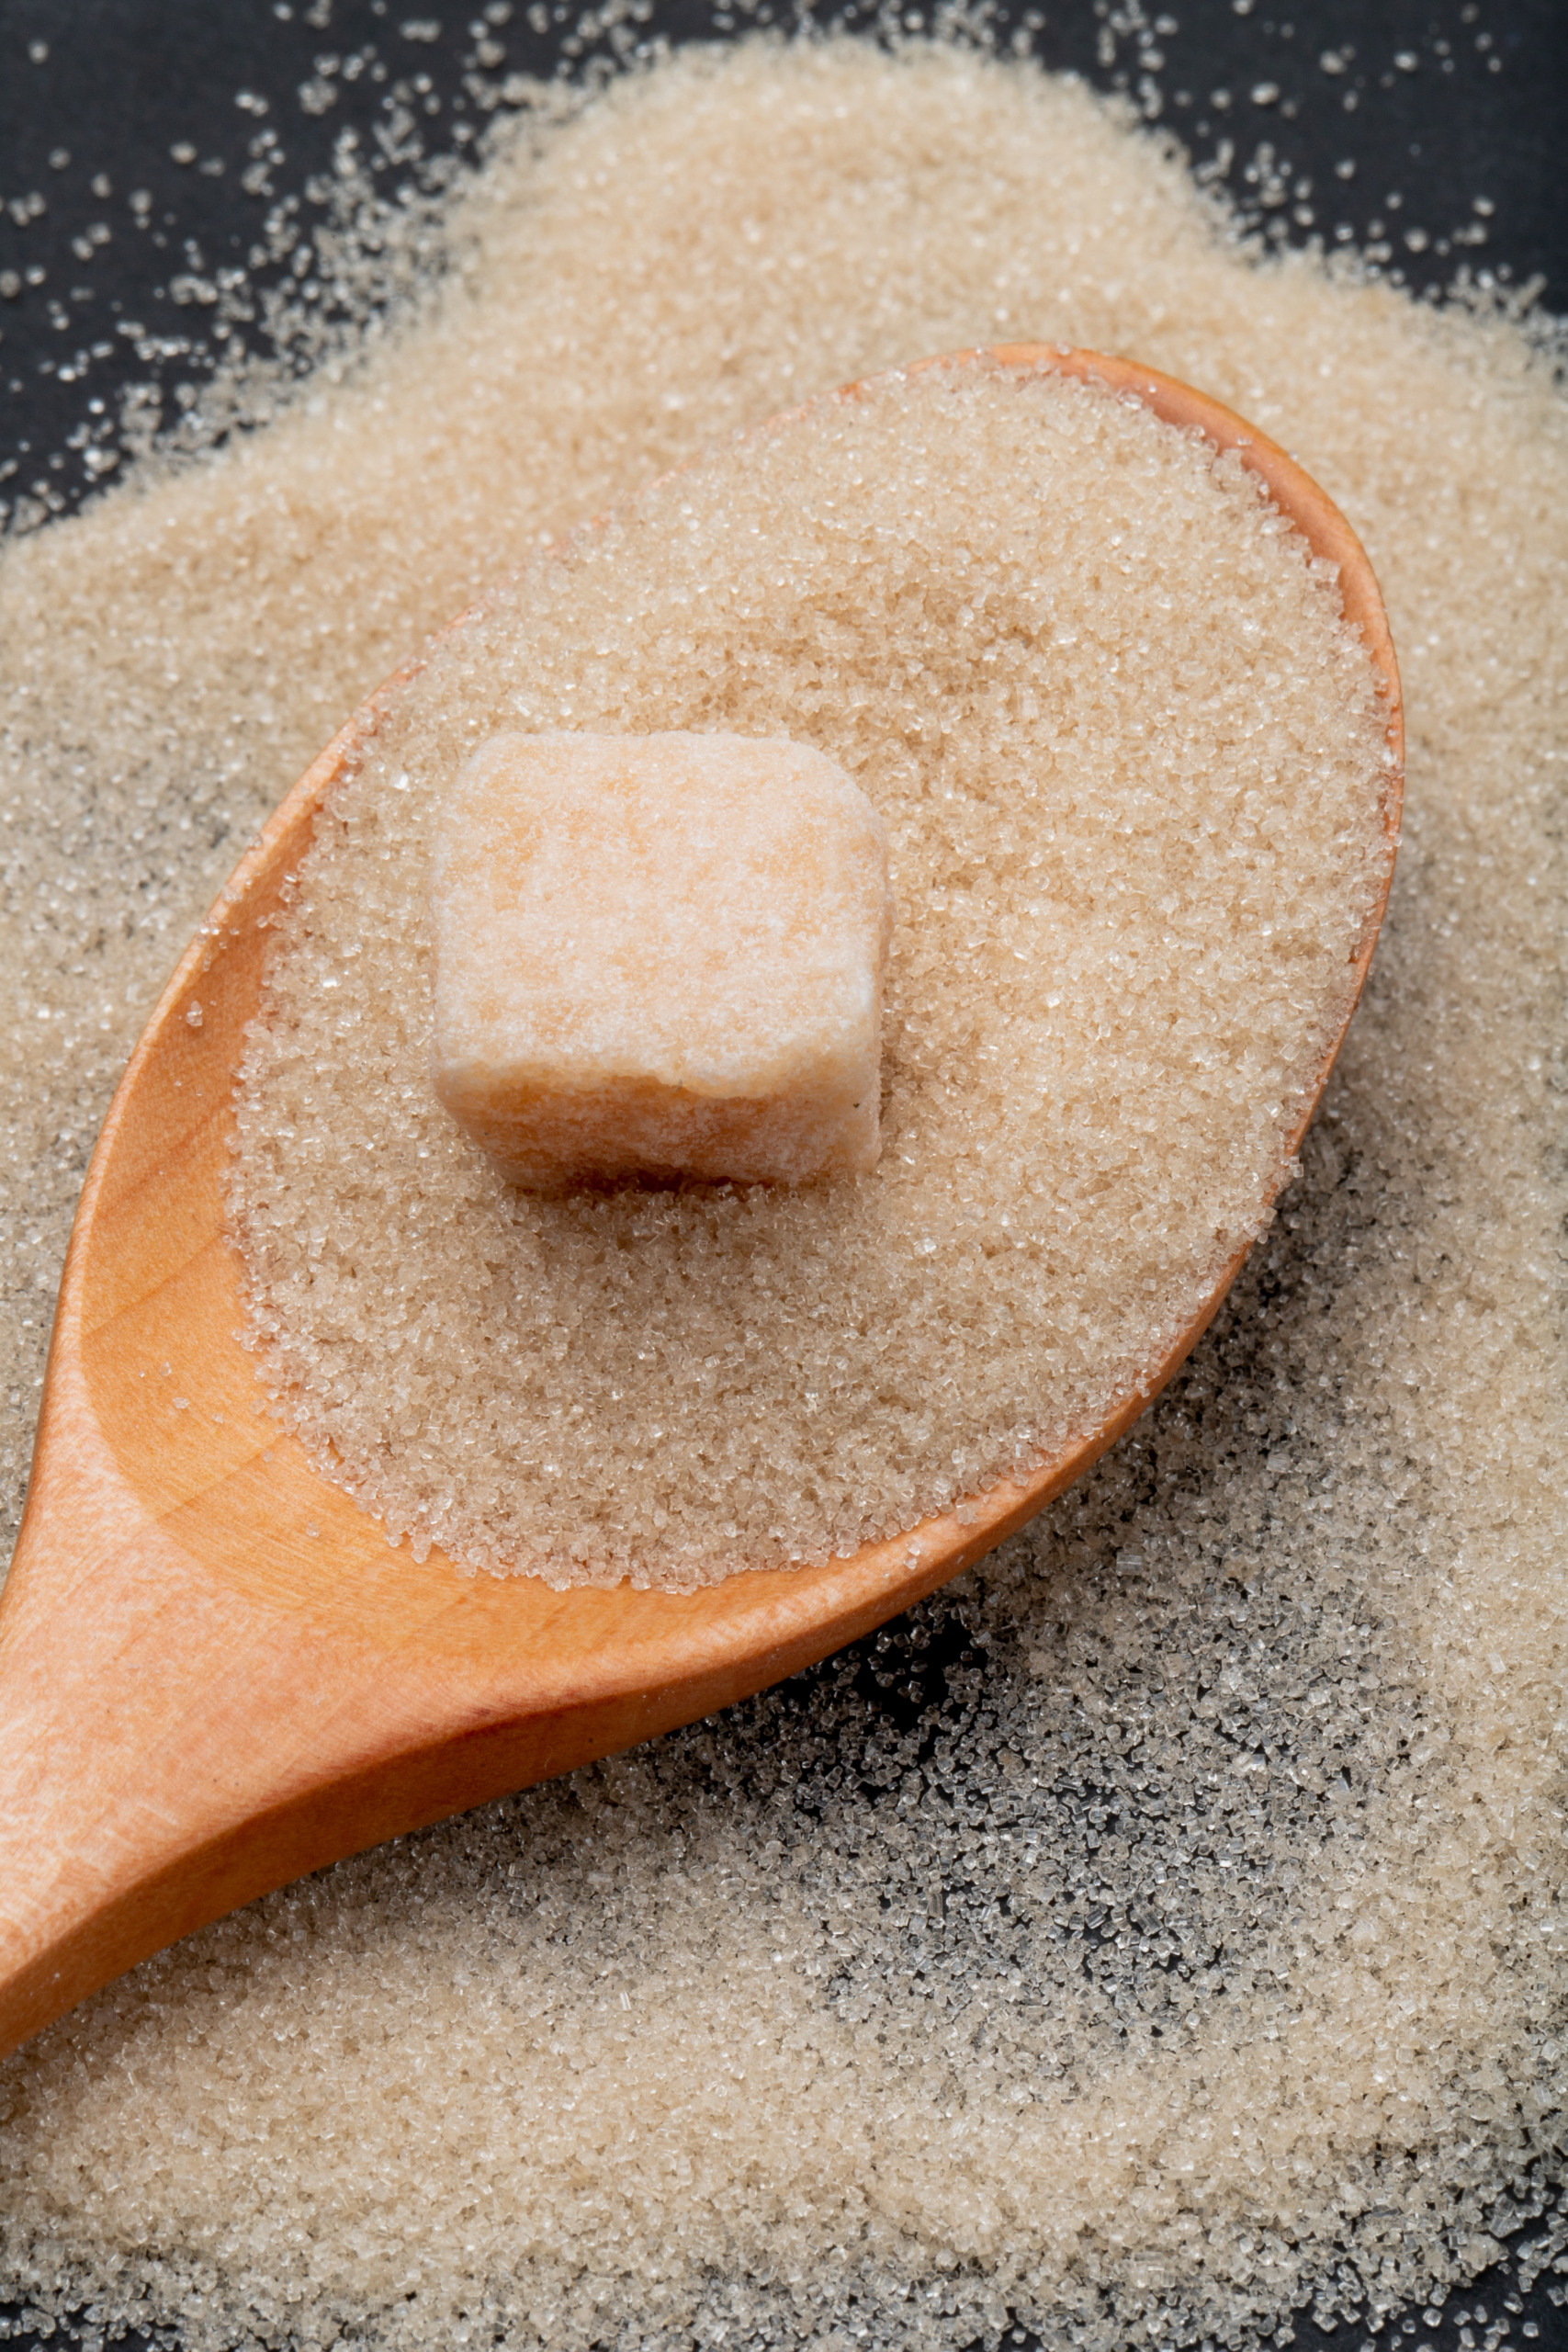 Oferta global de açúcar pode aumentar